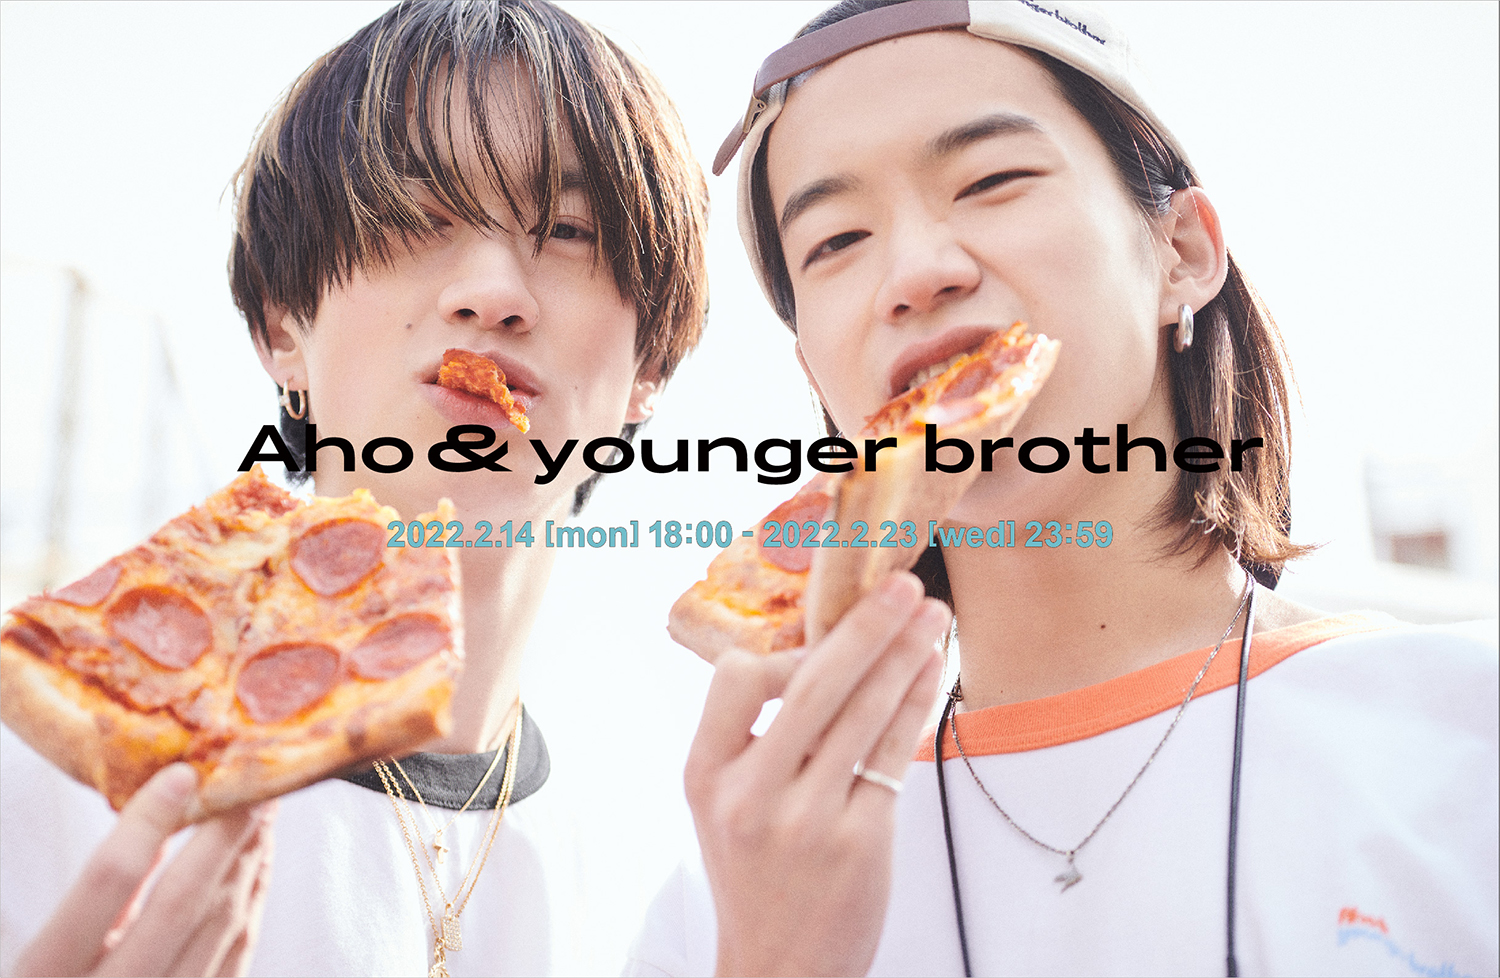 もーりーしゅーとオリジナルブランド『Aho&younger brother』ローンチ 